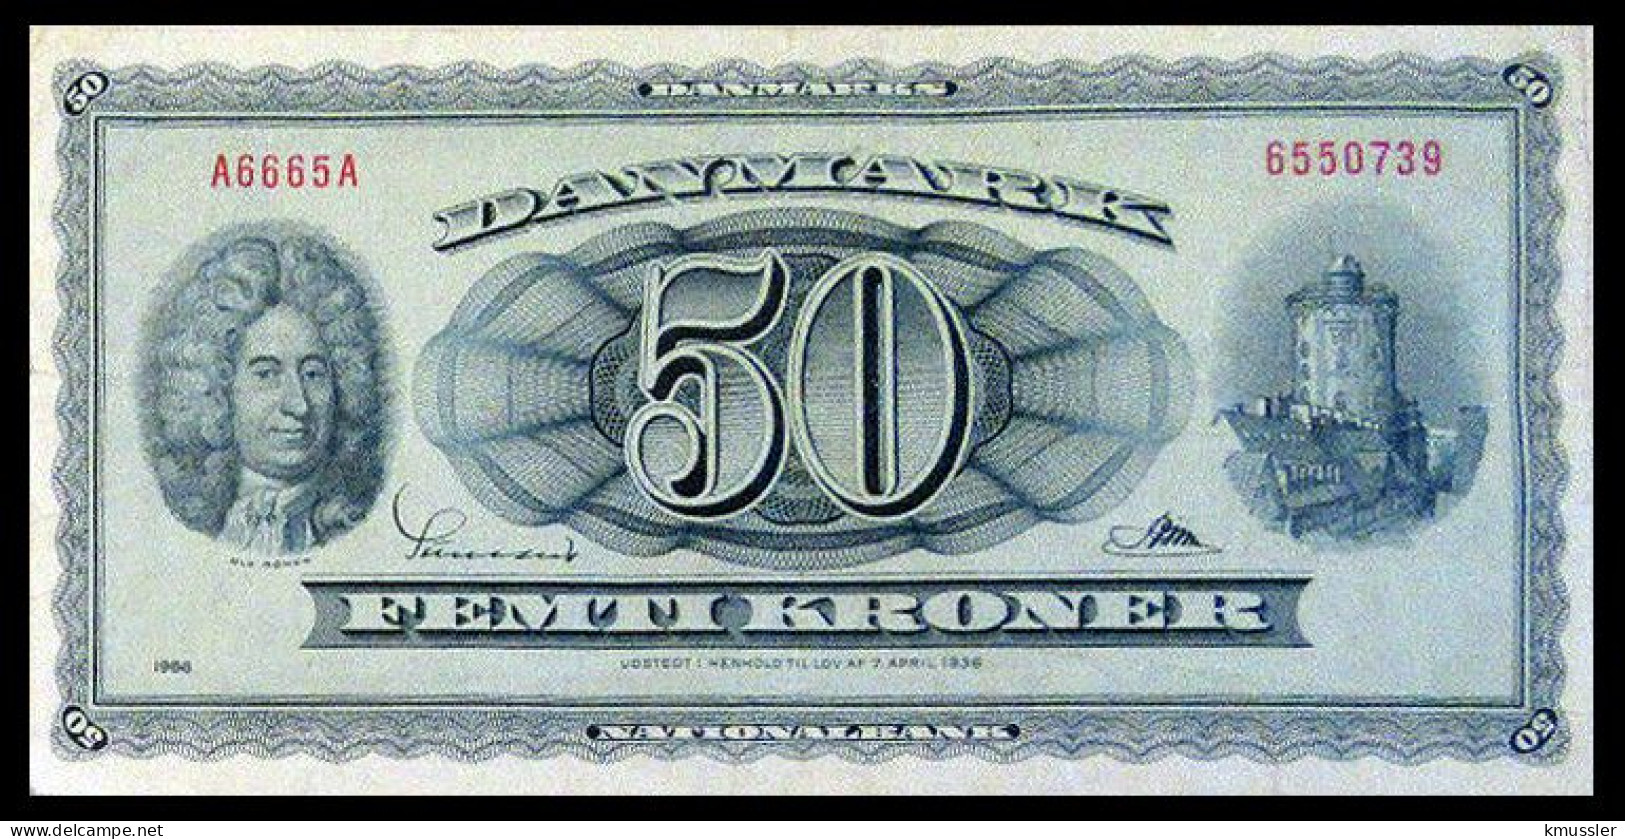 # # # Banknote Dänemark (Denmark) 50 Kroner 1936 # # # - Dänemark